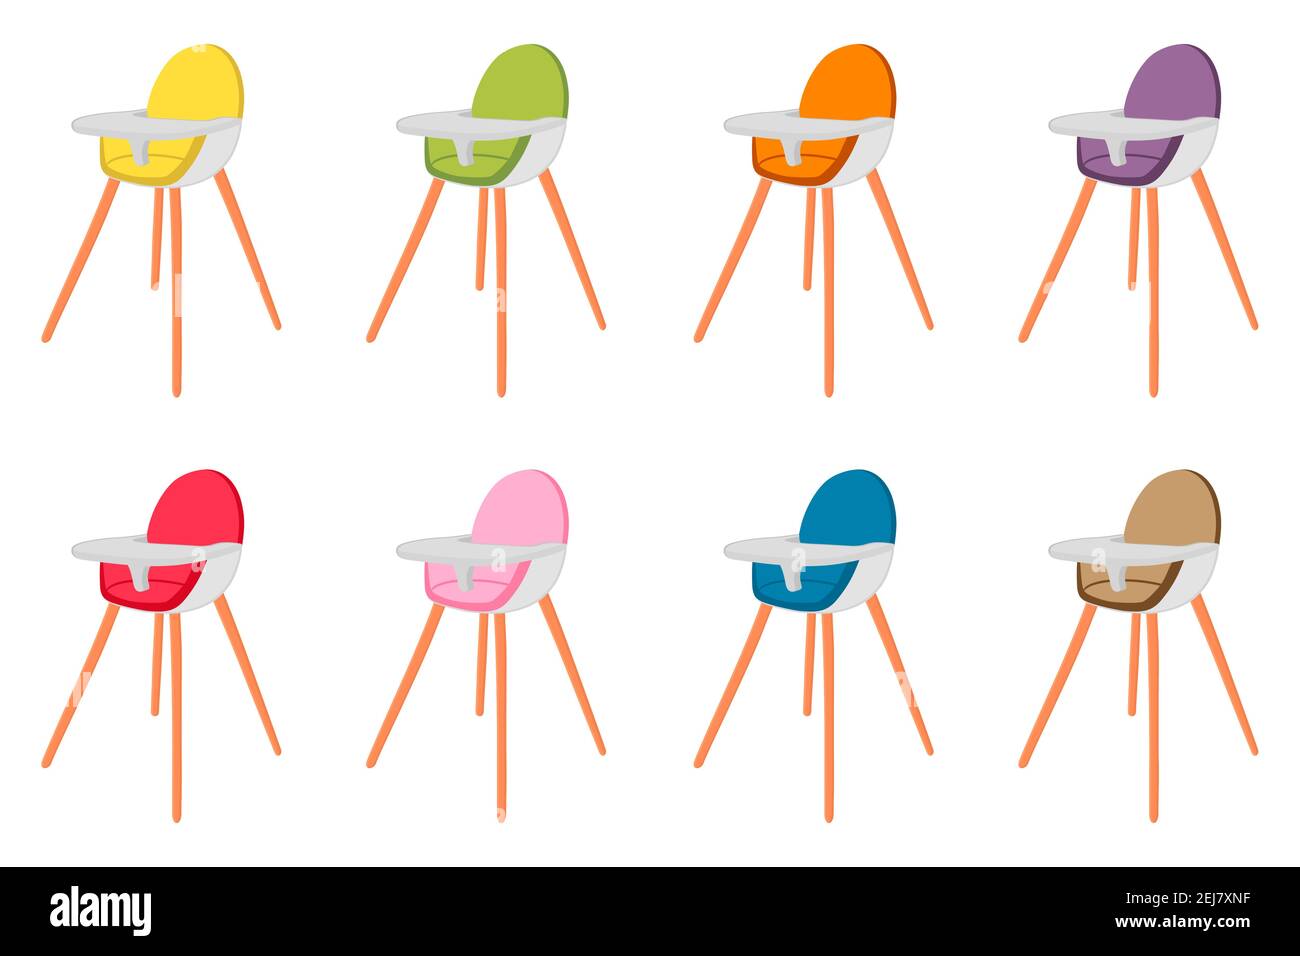 Ilustración sobre el tema silla alta moderna y colorida para la  alimentación del bebé. Dibujo que consiste en una colección de diseños de  colores silla para niños en las piernas altas. Ki